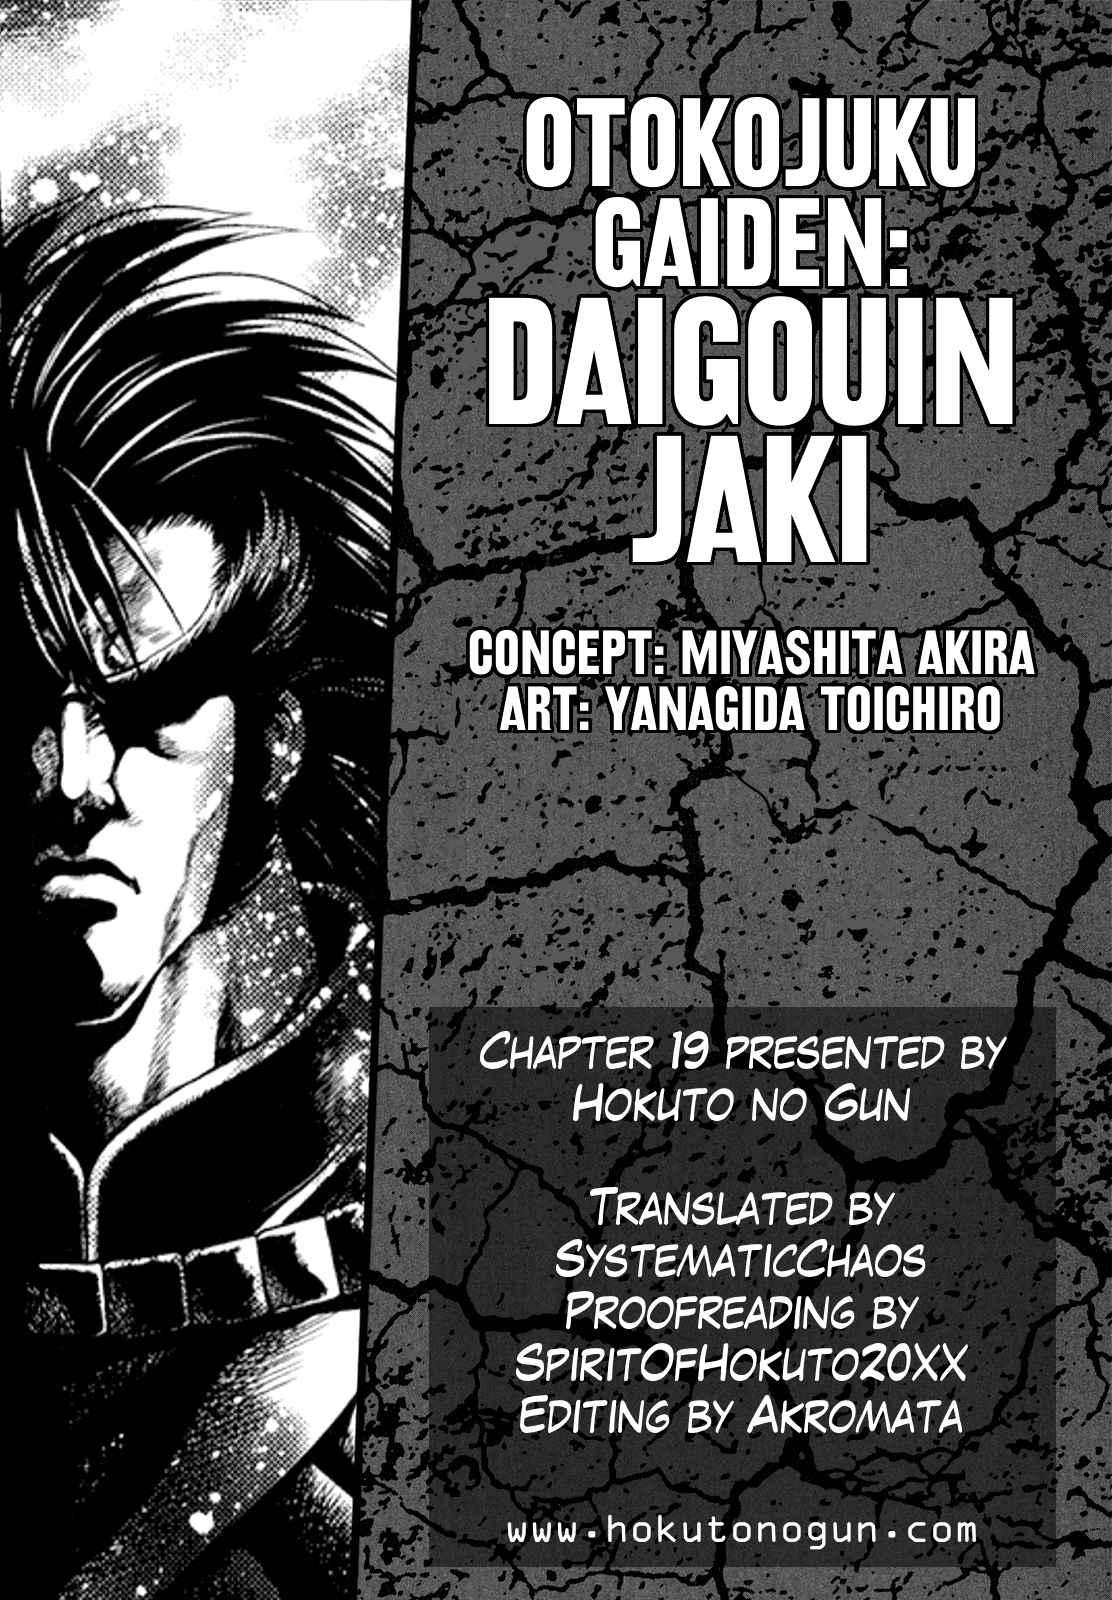 Otokojuku Gaiden Daigouin Jaki Vol. 3 Ch. 19 With Life at Stake